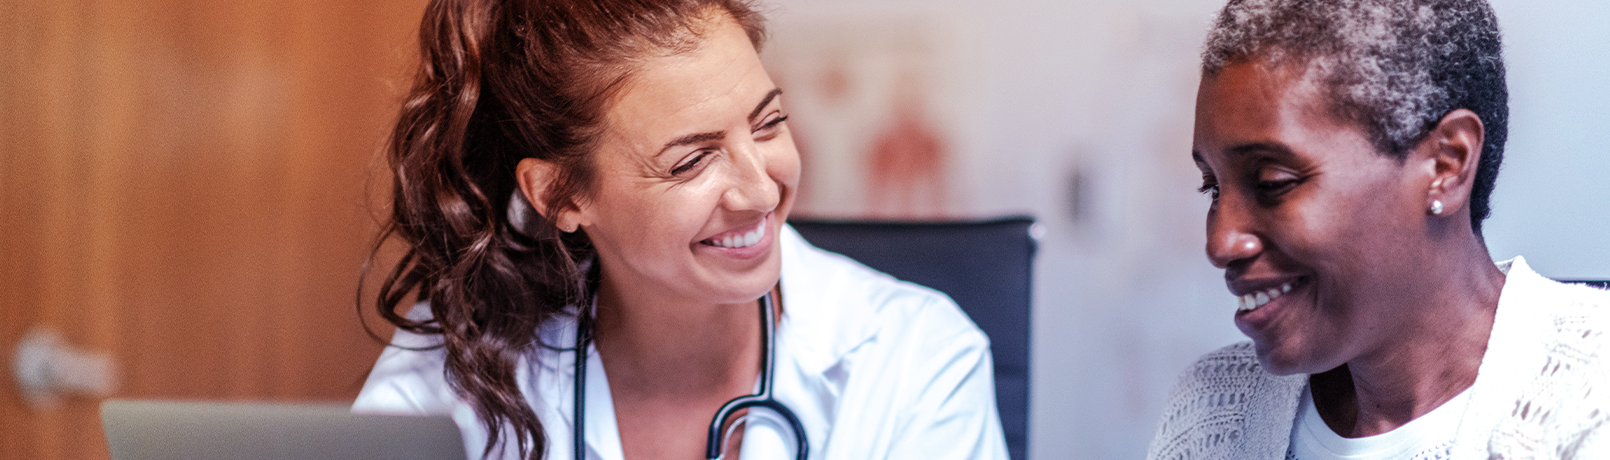 Imagem de uma médica e de uma paciente sorrindo.